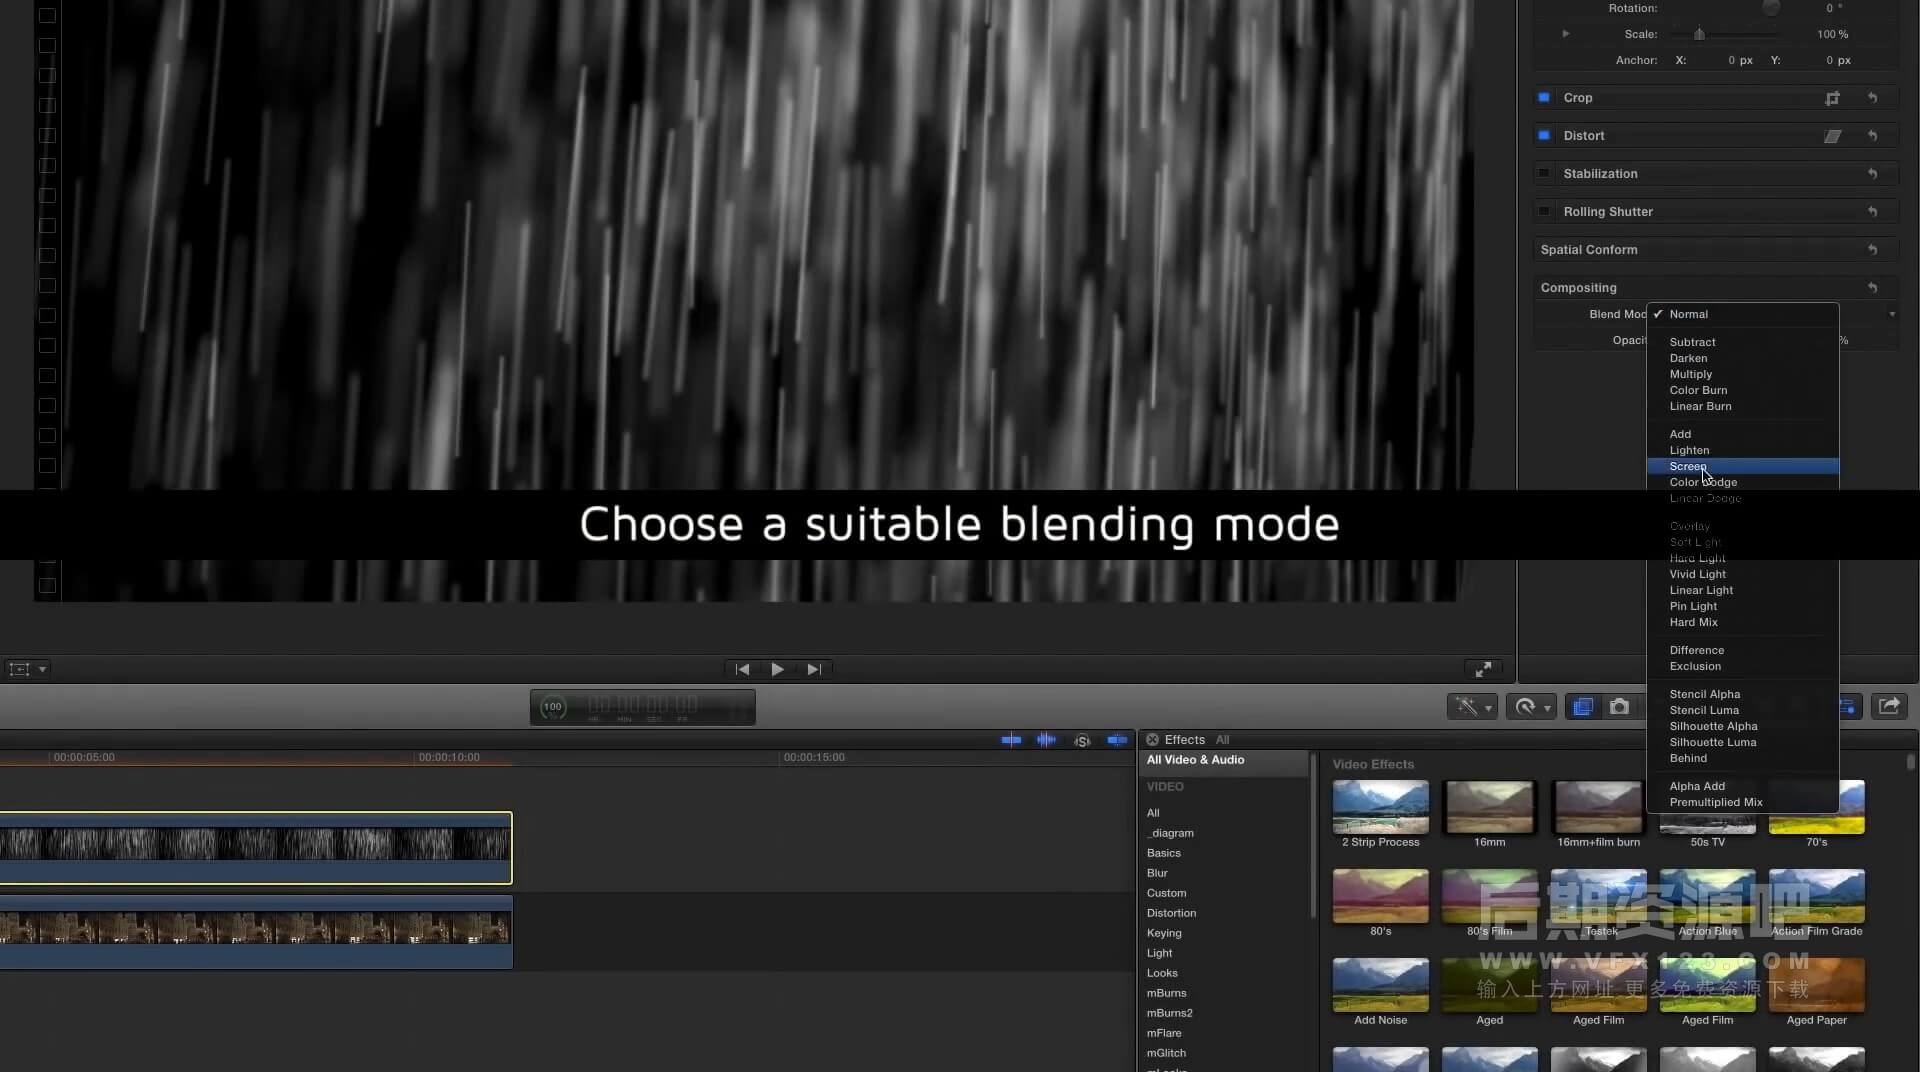 视频素材 2K高清下雨水珠视频特效合成素材 mWater